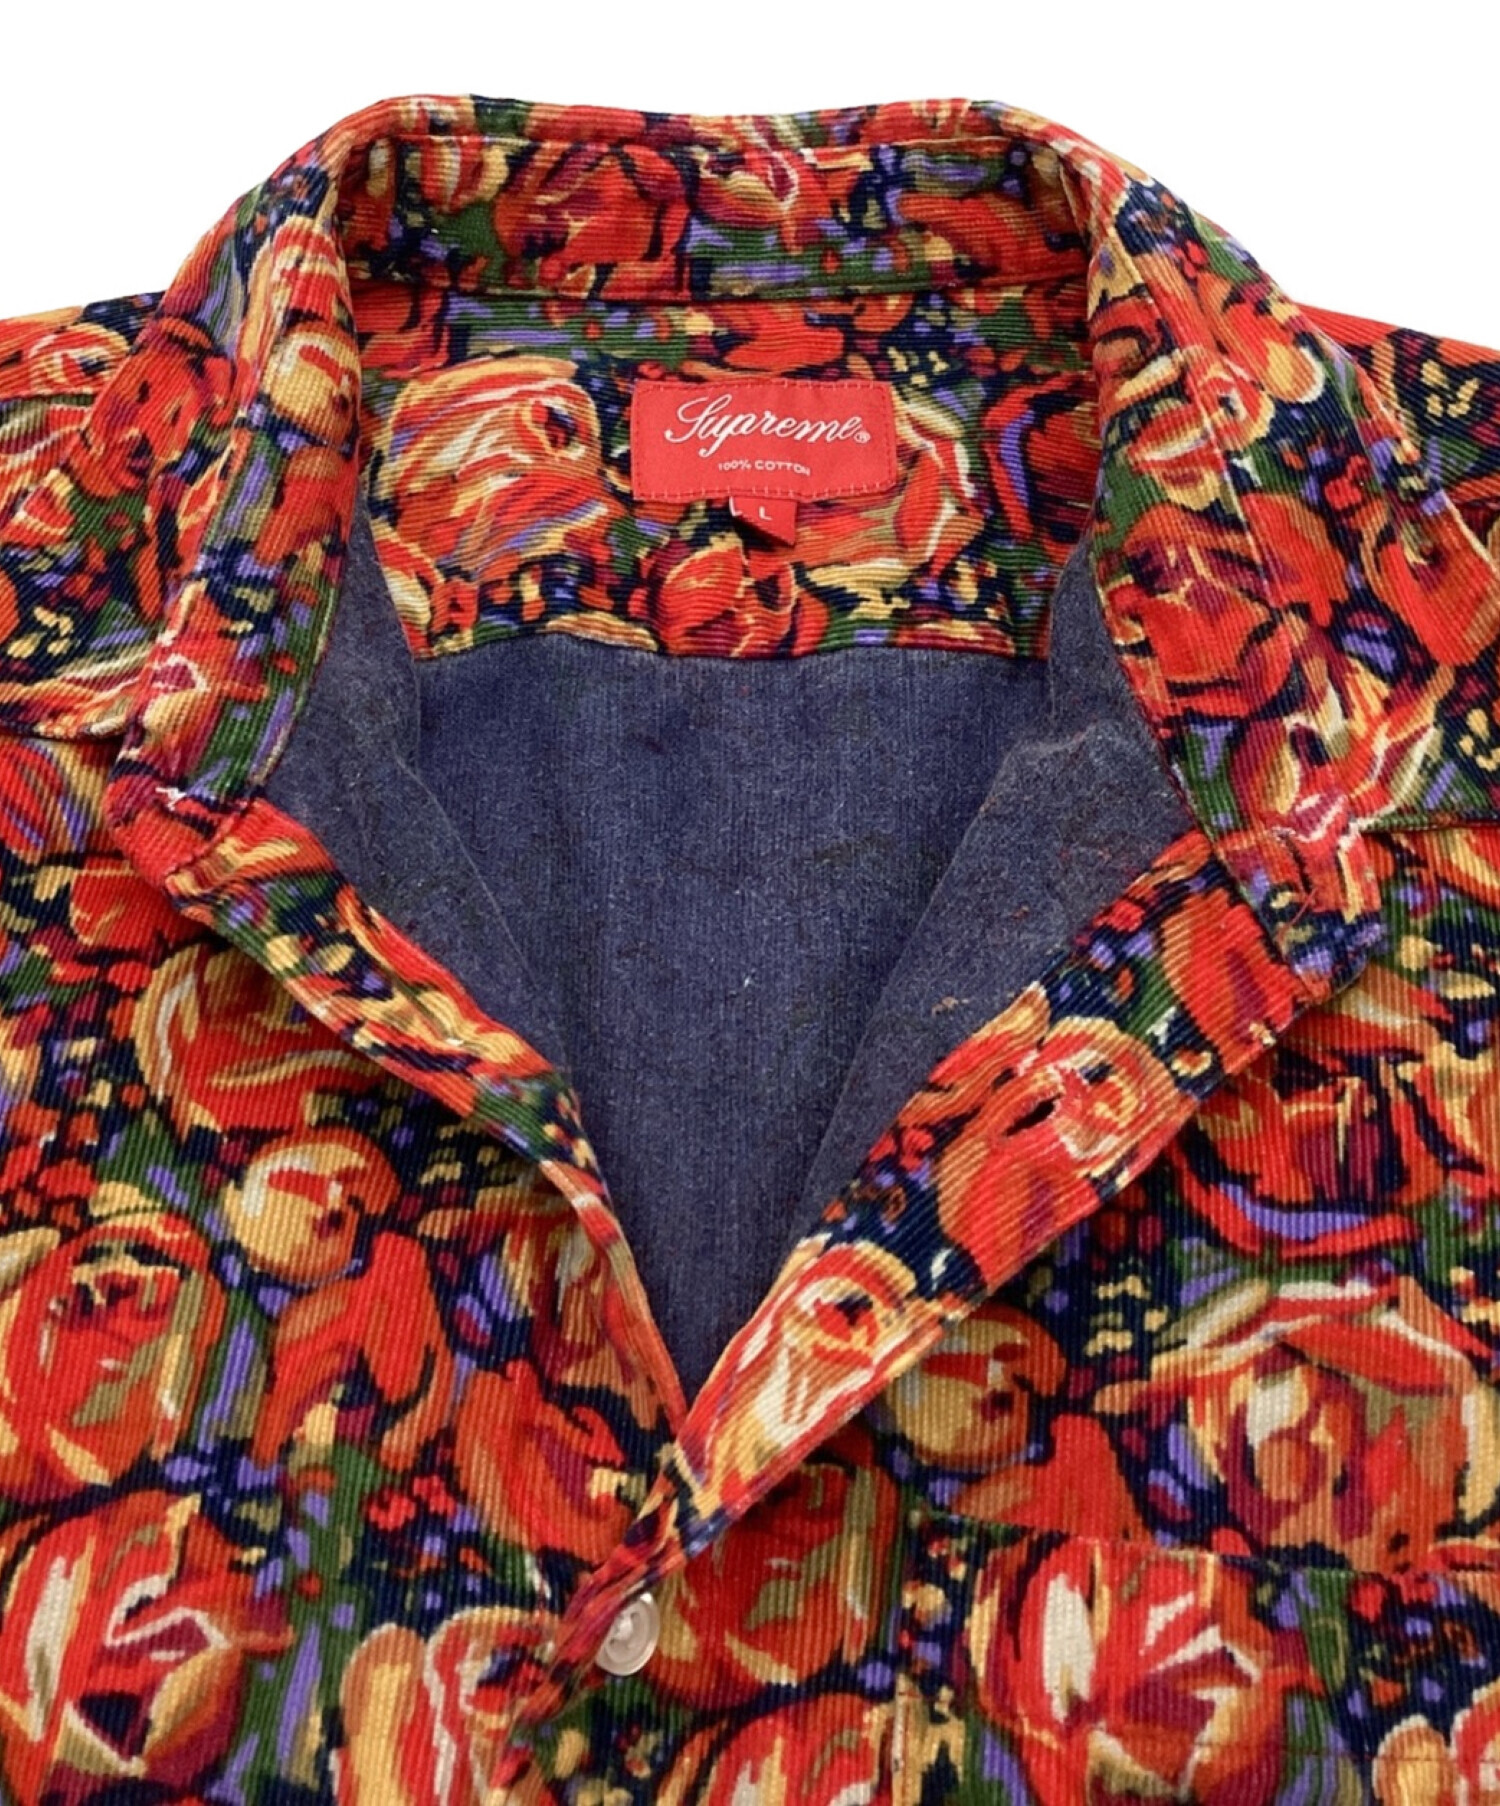 Supreme (シュプリーム) Roses Corduroy Shirt / ローズコーデュロイシャツ　18AW レッド サイズ:L